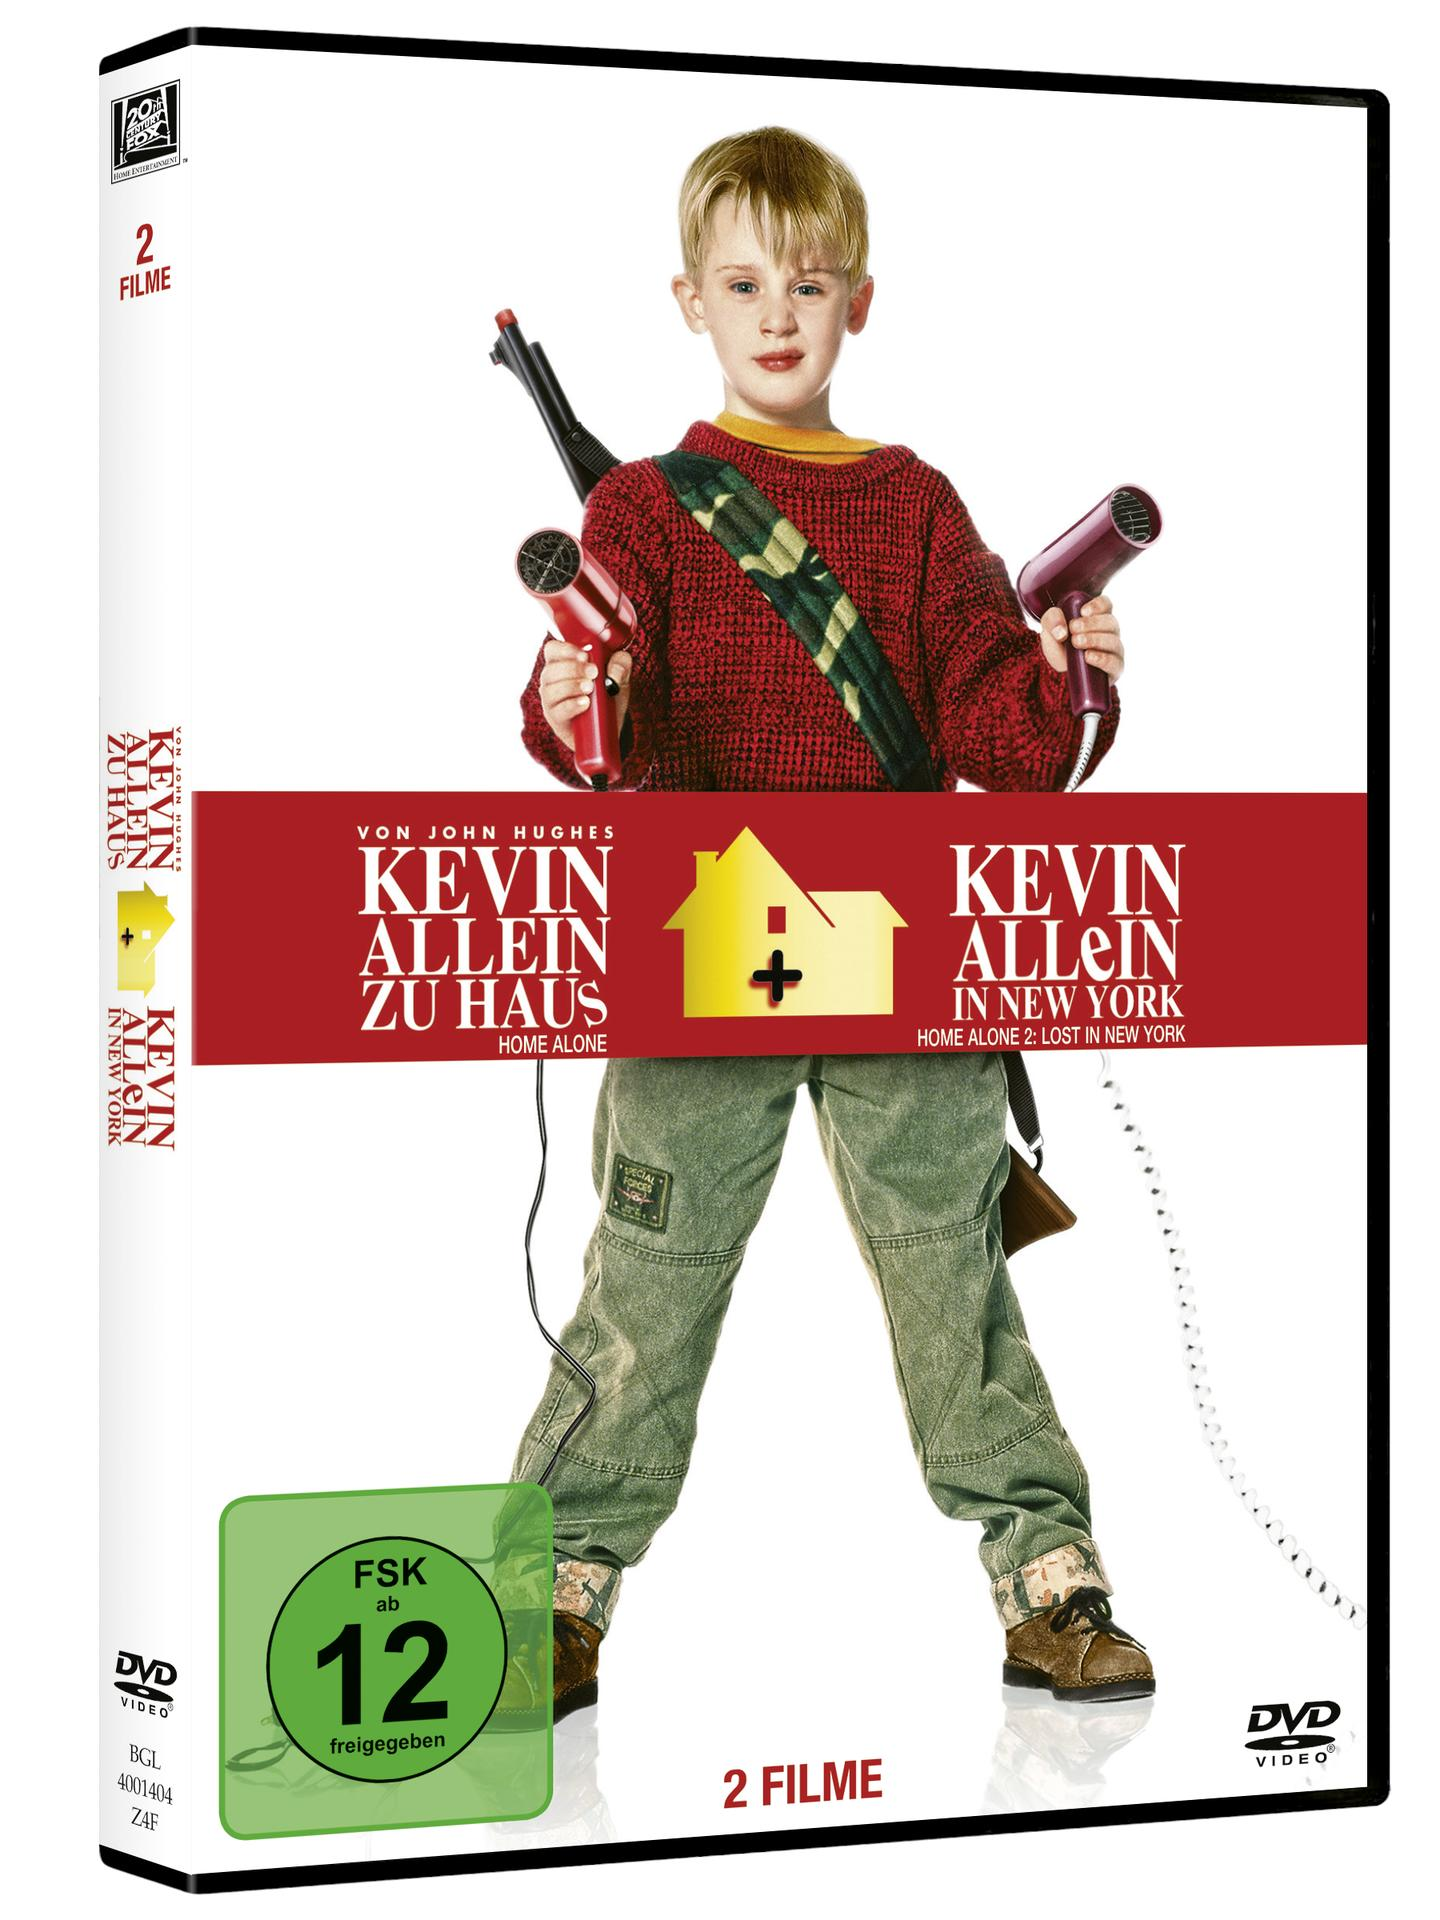 DVD Kevin York zu in Allein New - / Kevin Allein Haus -